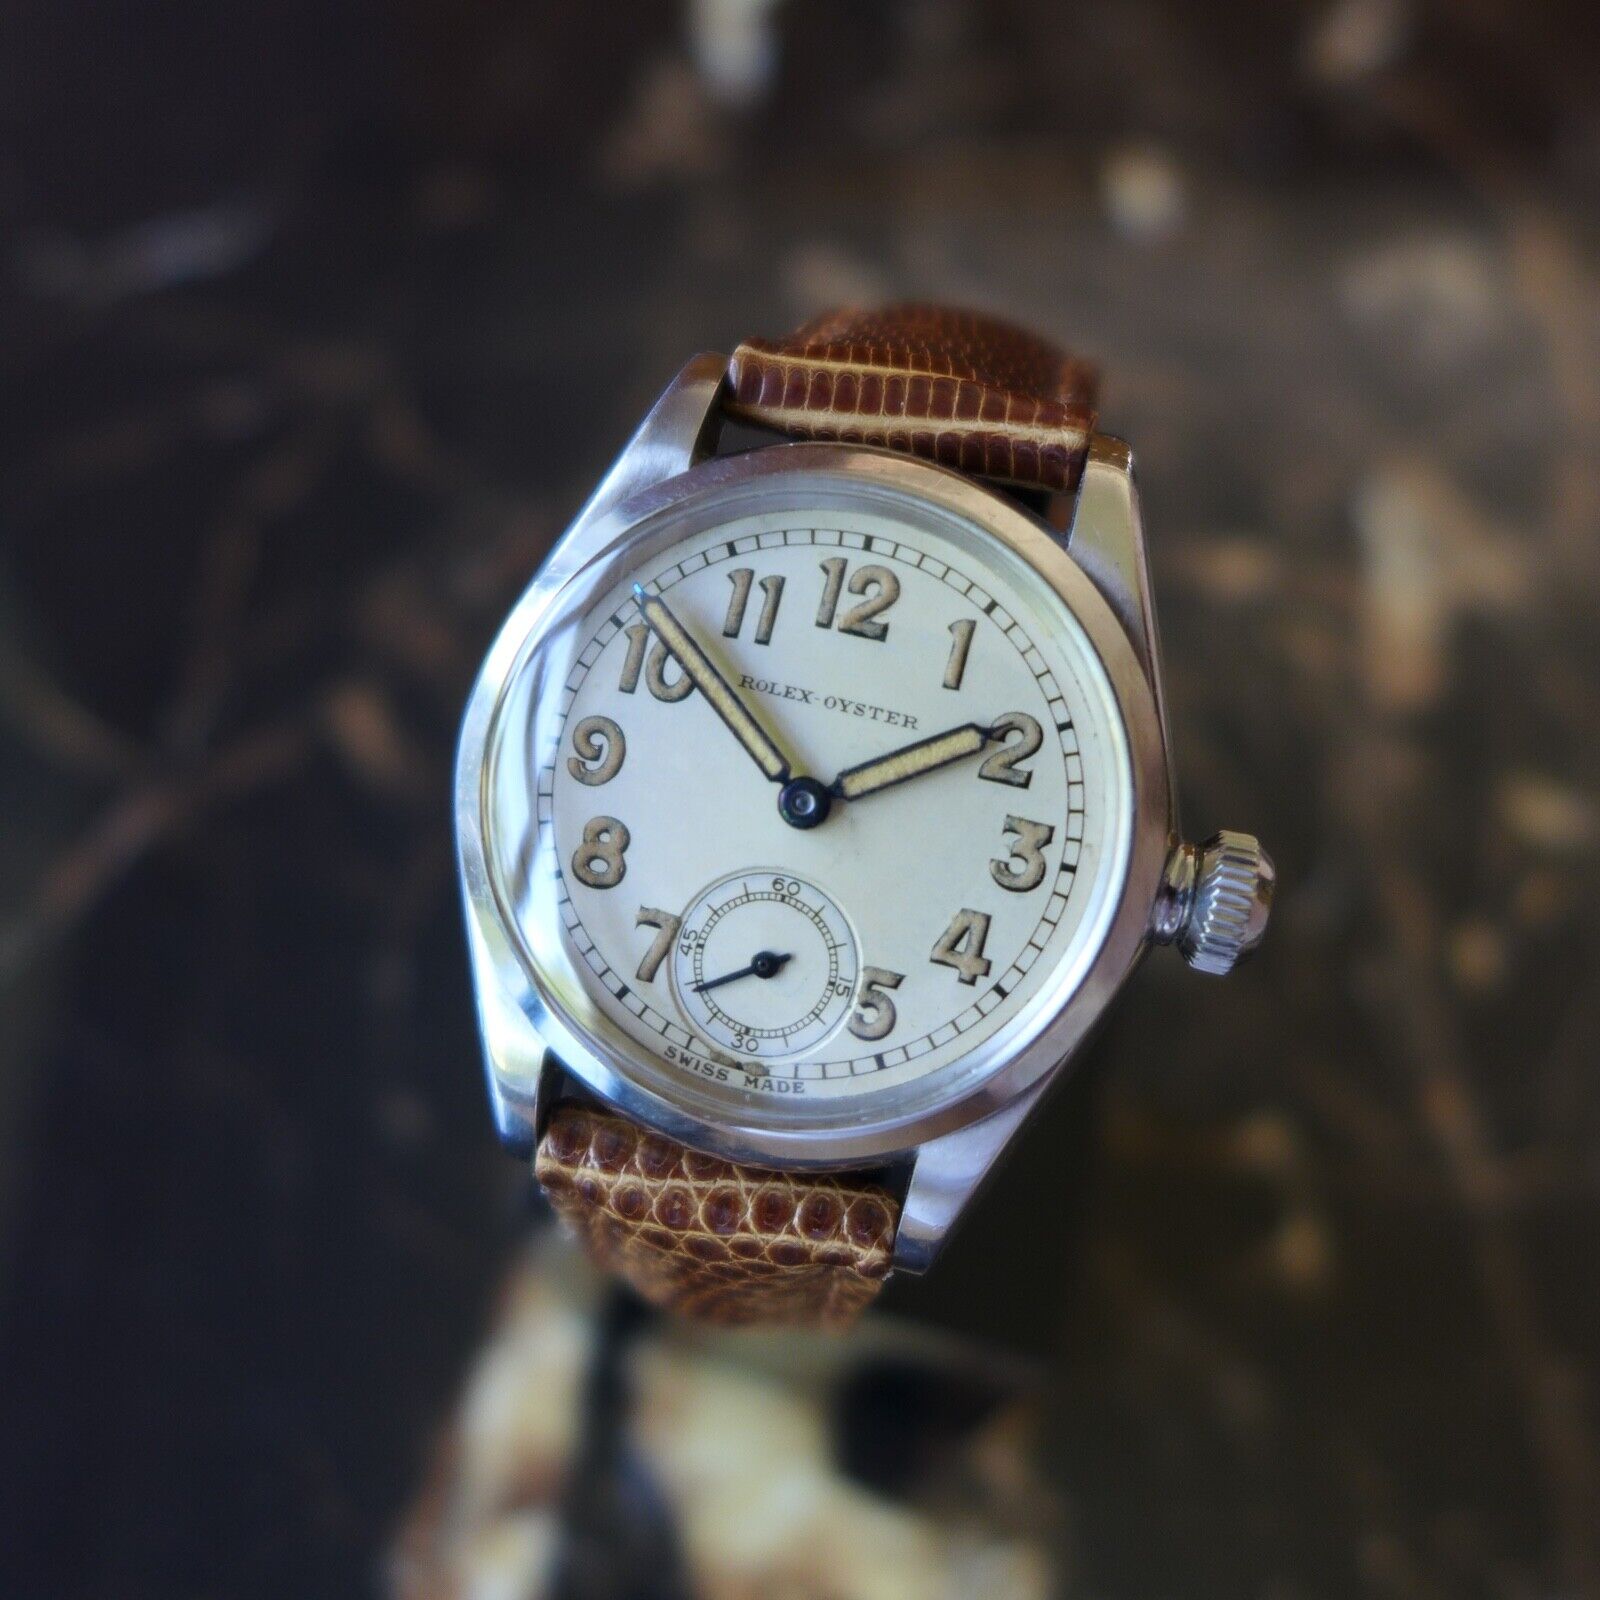 1941年製 ロレックス腕時計 ヴィンテージミリタリー オイスター 第二次 